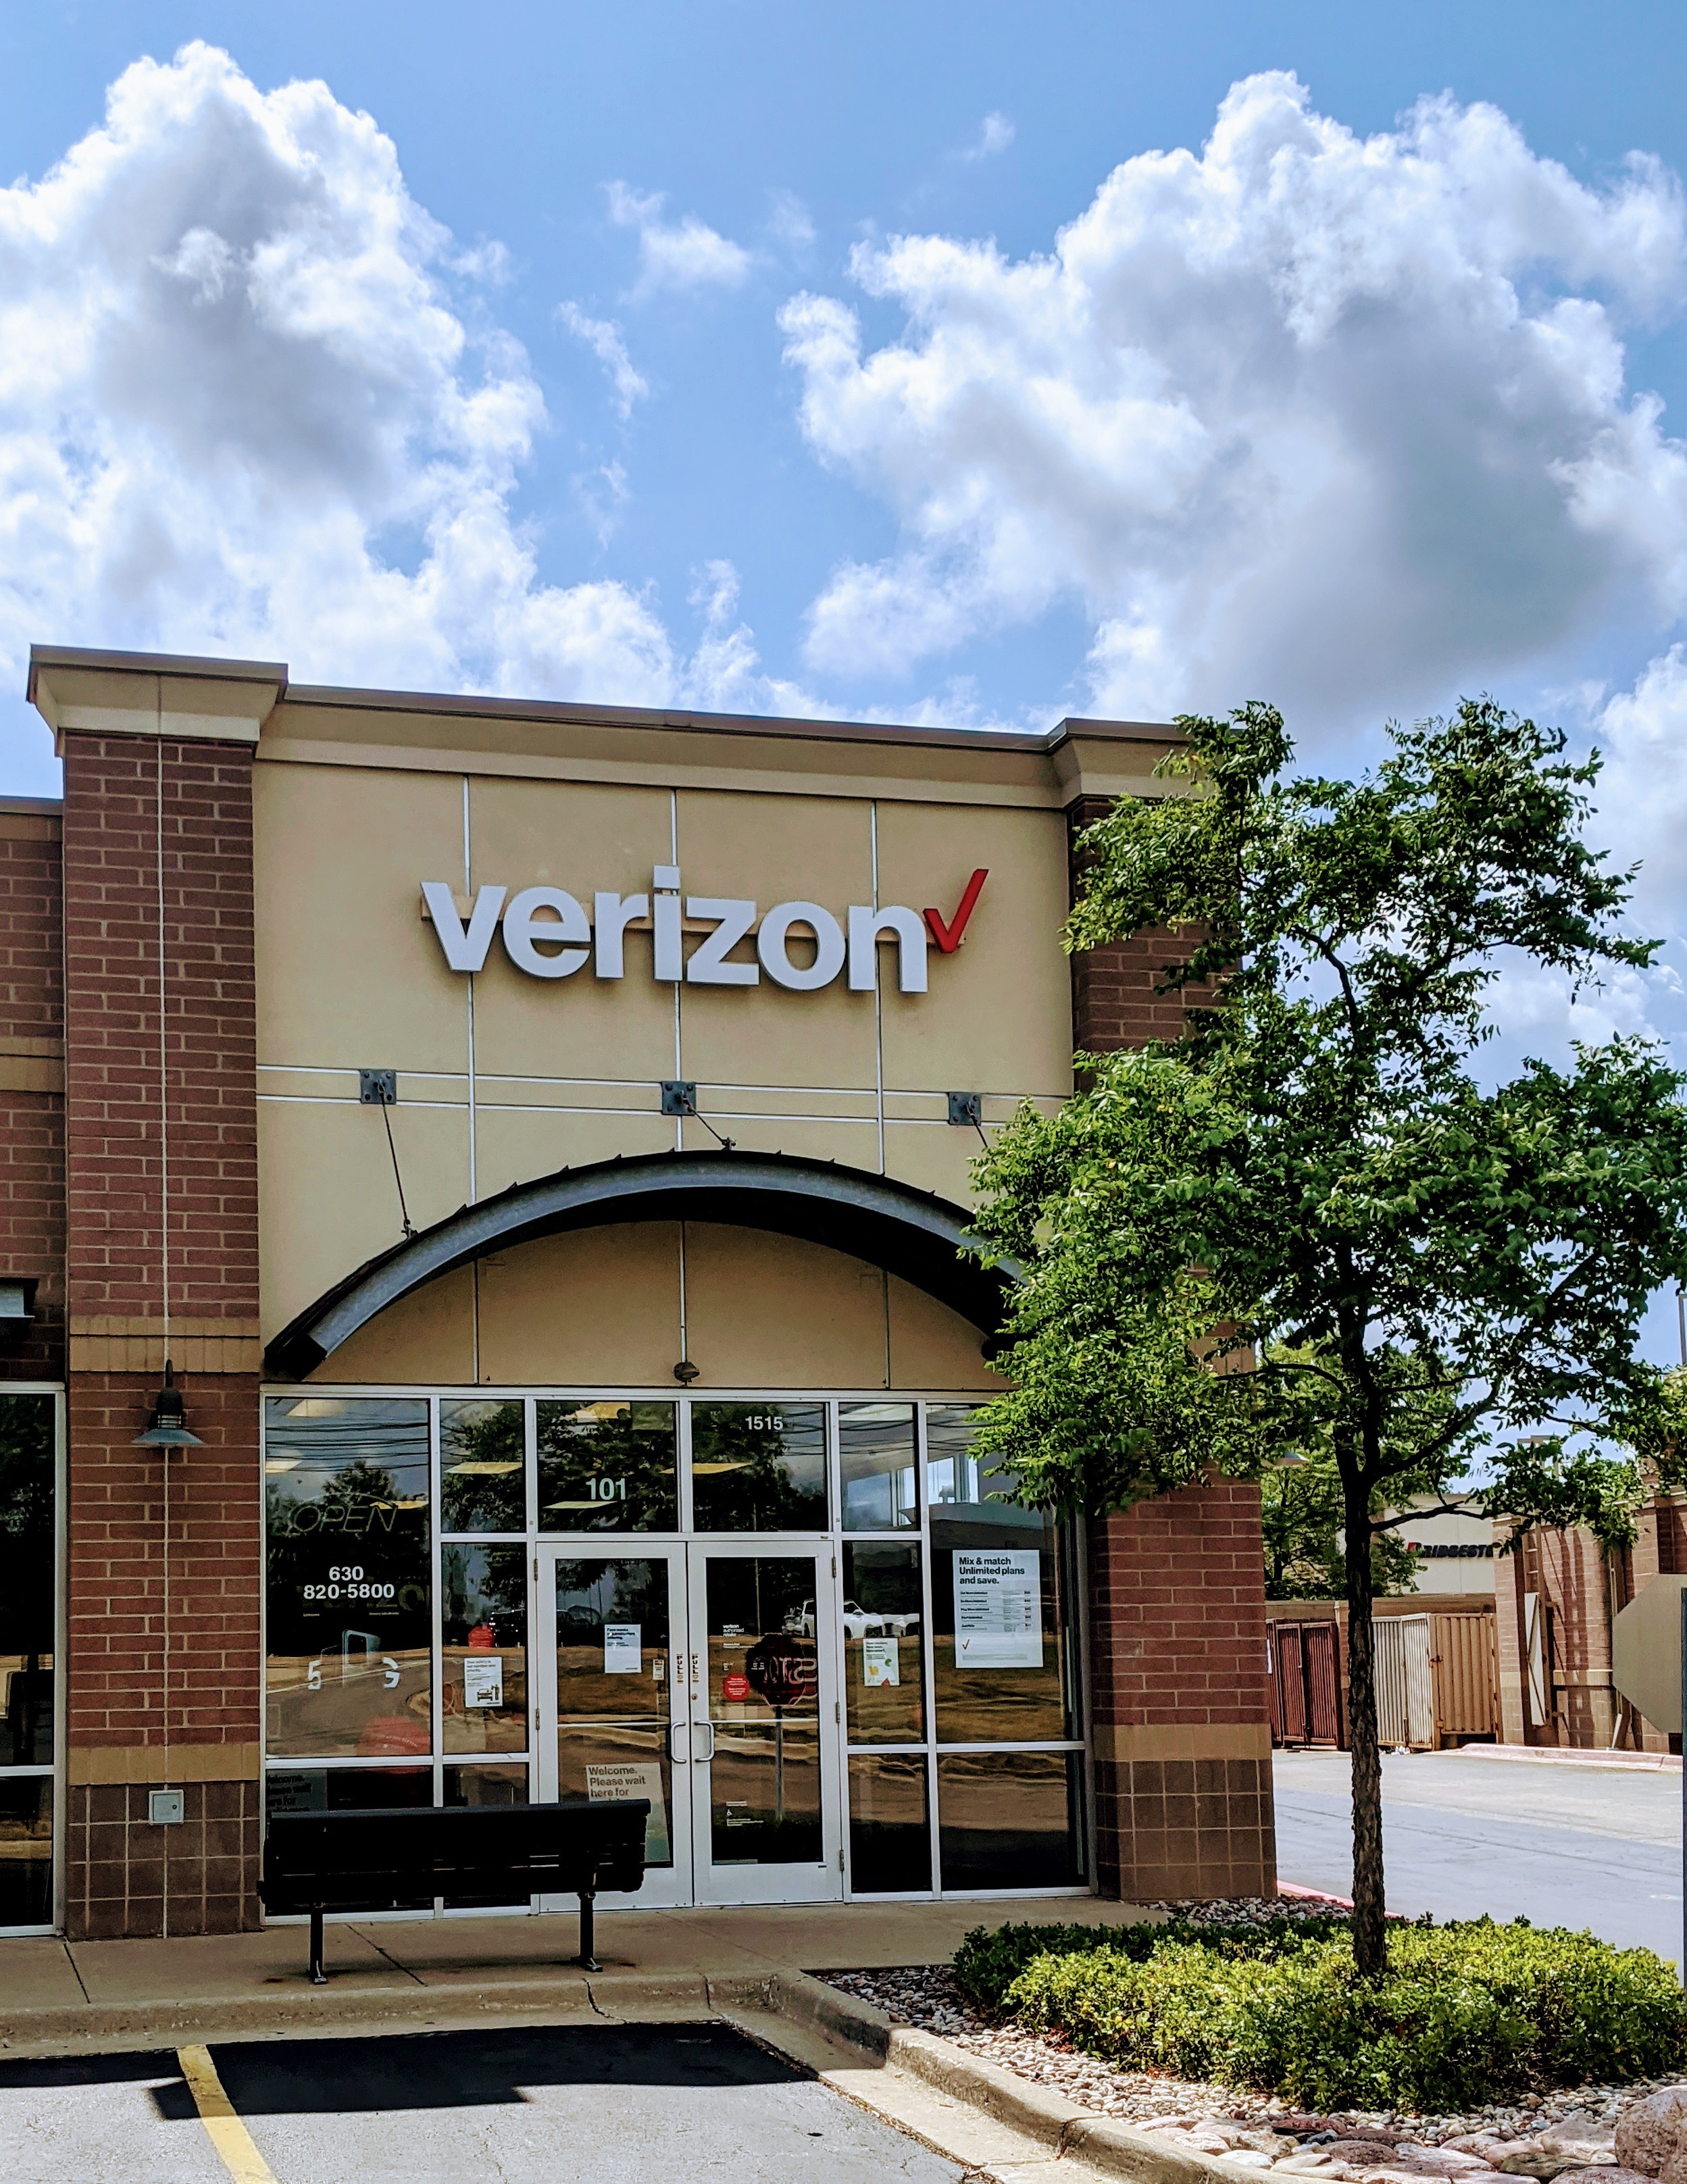 Wireless Zone® of Aurora, Verizon Authorized Retailer
1515 Butterfield Rd Ste 101
Aurora, IL